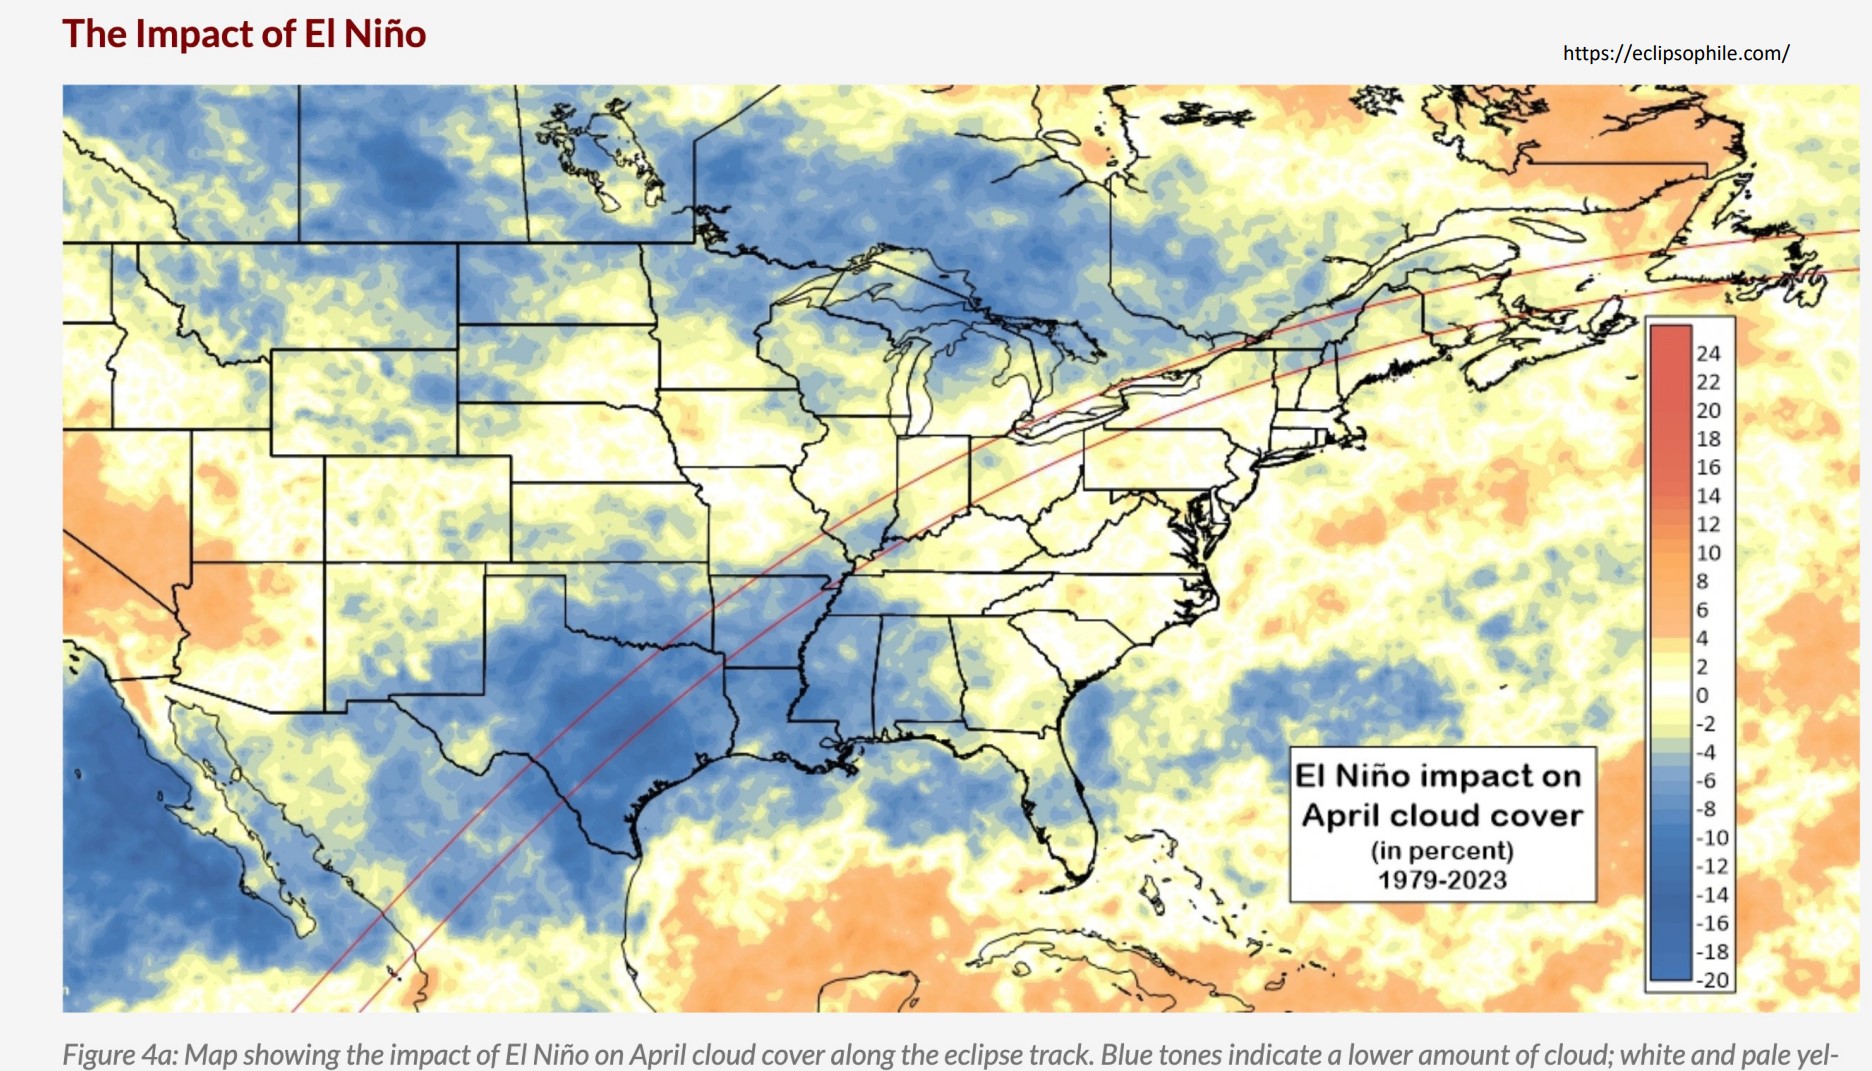 El Nino impact on April cloud cover